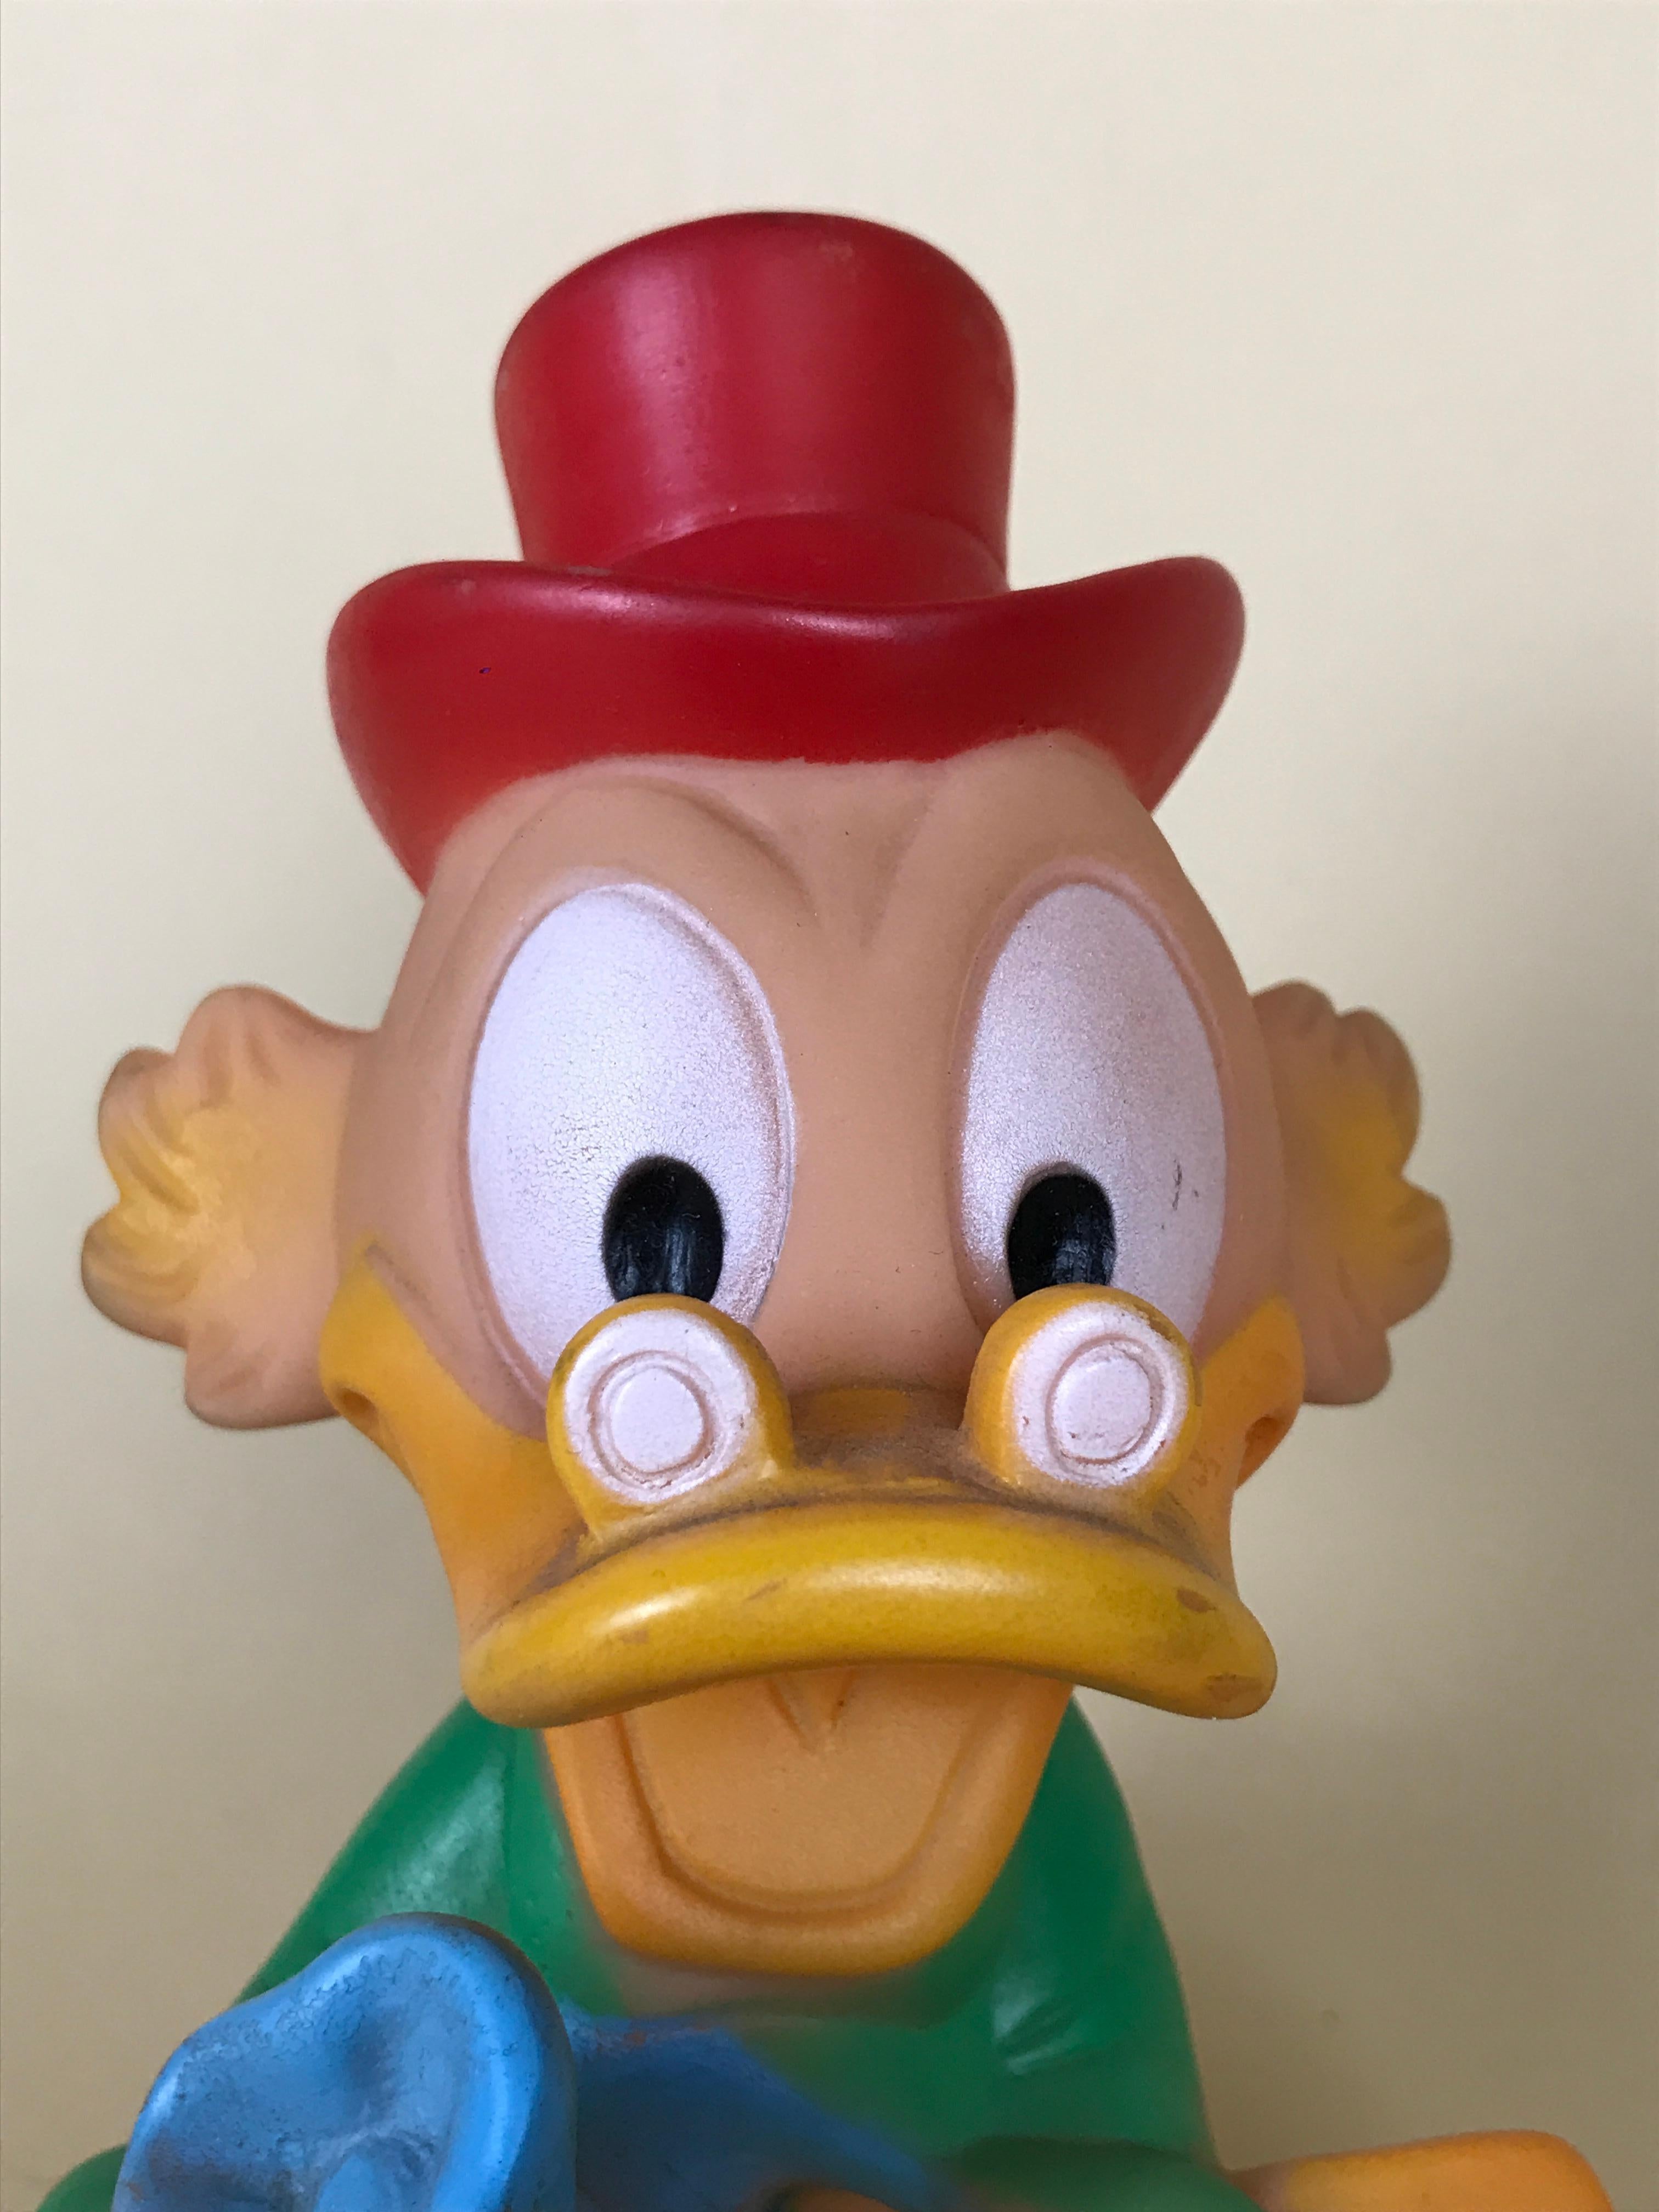 1960s Vintage Uncle Scrooge Squeak Toy Made in Spain by Jugasa for Disney 3